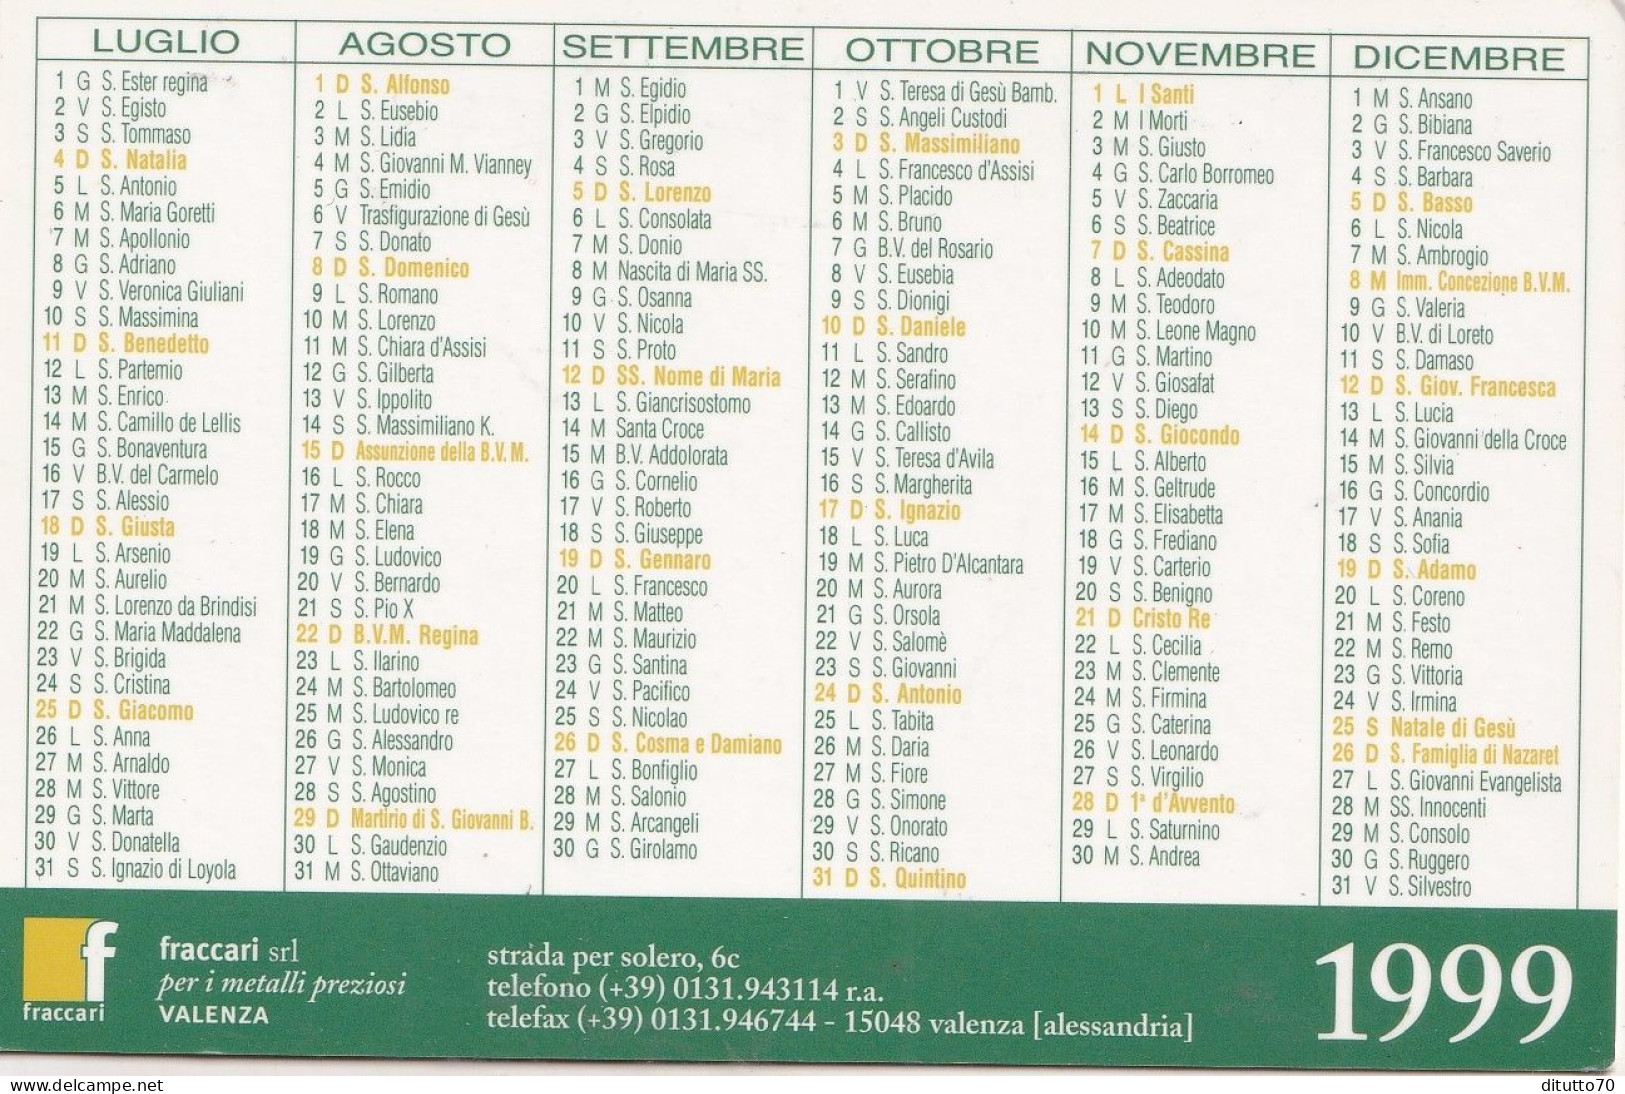 Calendarietto - Fraccari - Valenza - Anno 1999 - Tamaño Pequeño : 1991-00